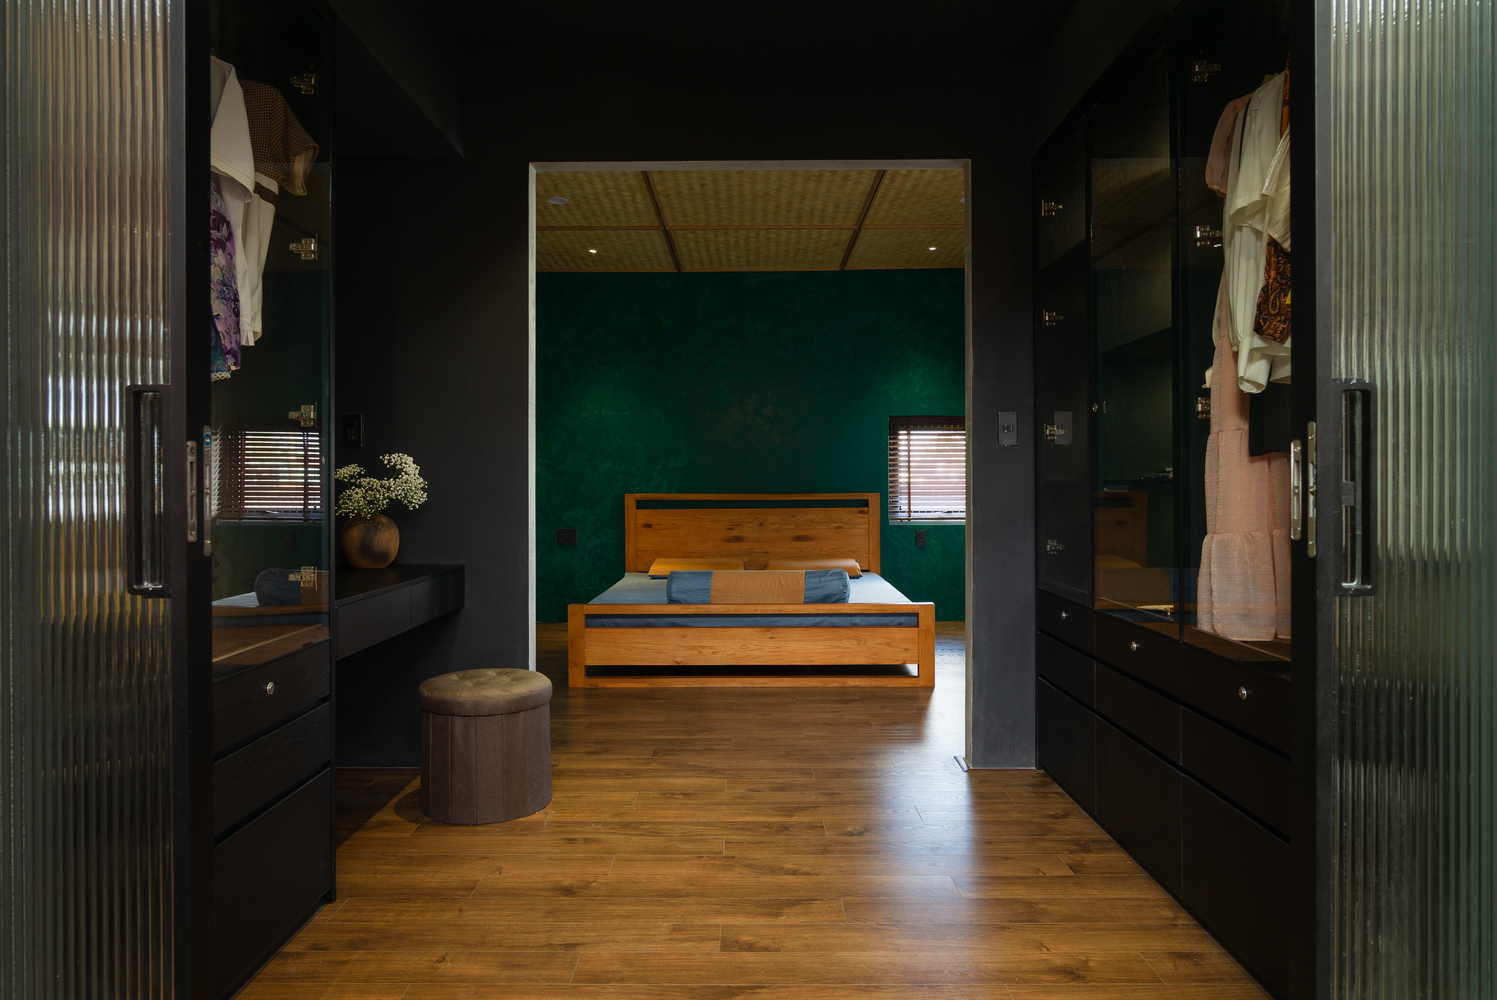 Phòng ngủ cực ấn tượng với sơn tường màu đen huyền bí kết hợp xanh ngọc sang trọng. Trong khi đó, giường và sàn gỗ tạo cảm giác thư giãn, thân thiện.